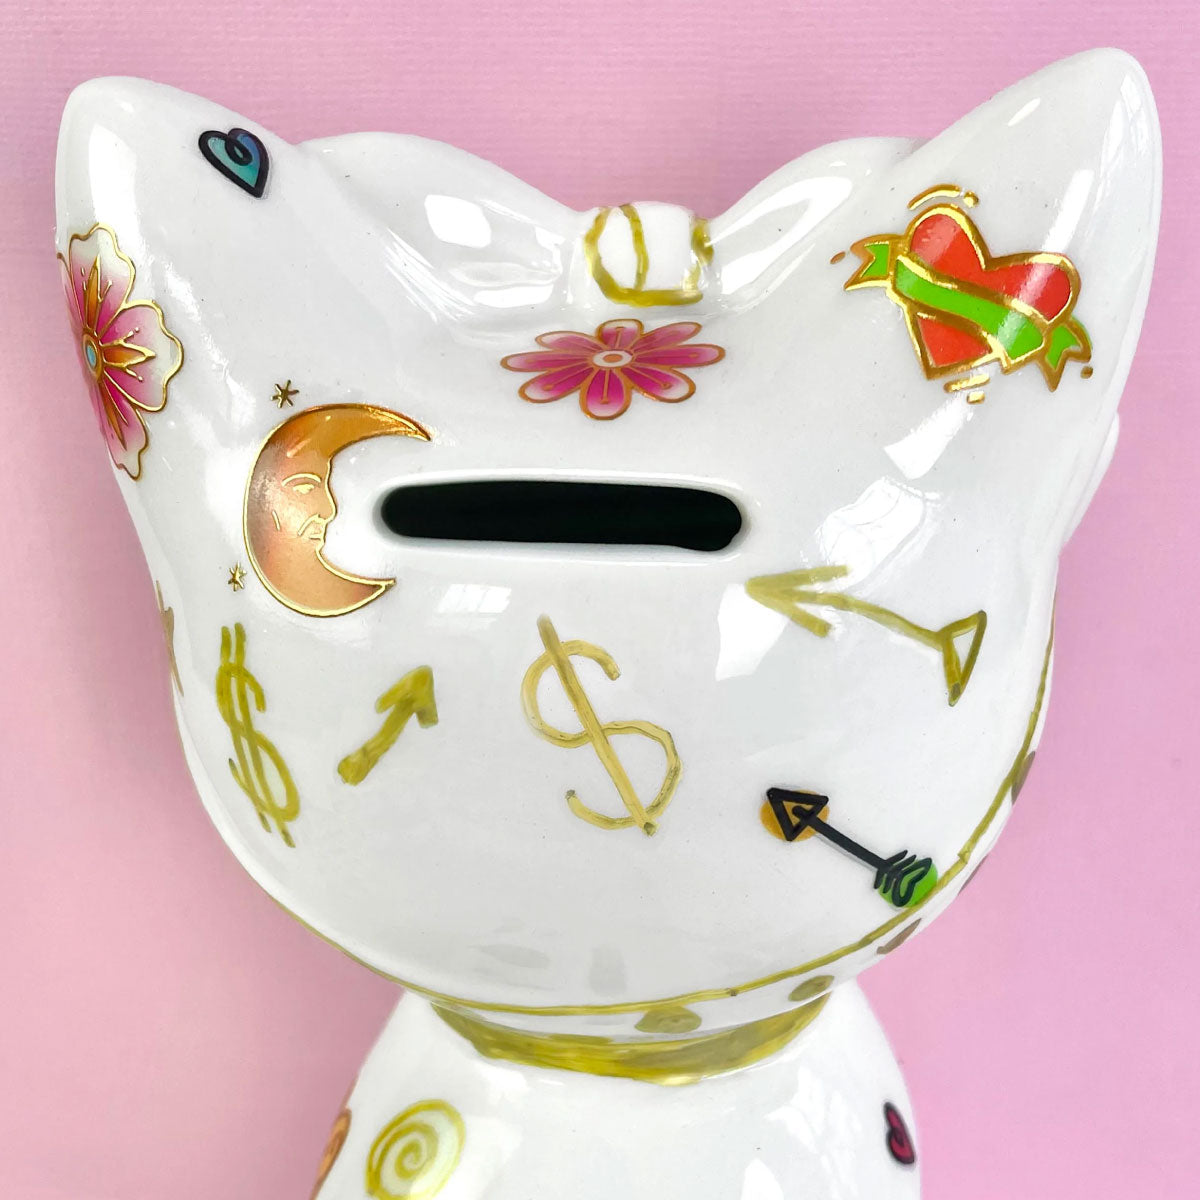 Bright Stripes Tattoo a Ceramic Bank Kit - Kitty Cat